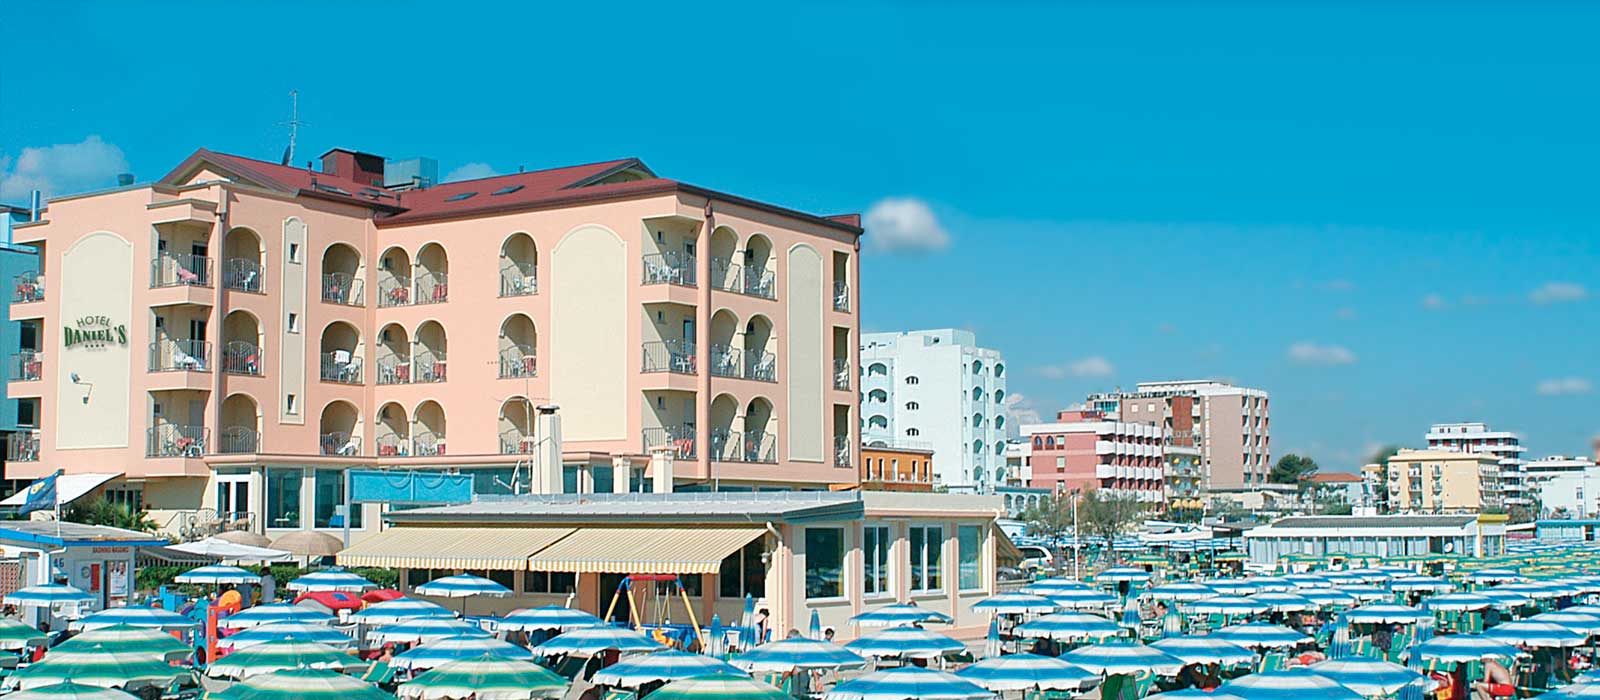 Hotel Daniel's visto dal mare